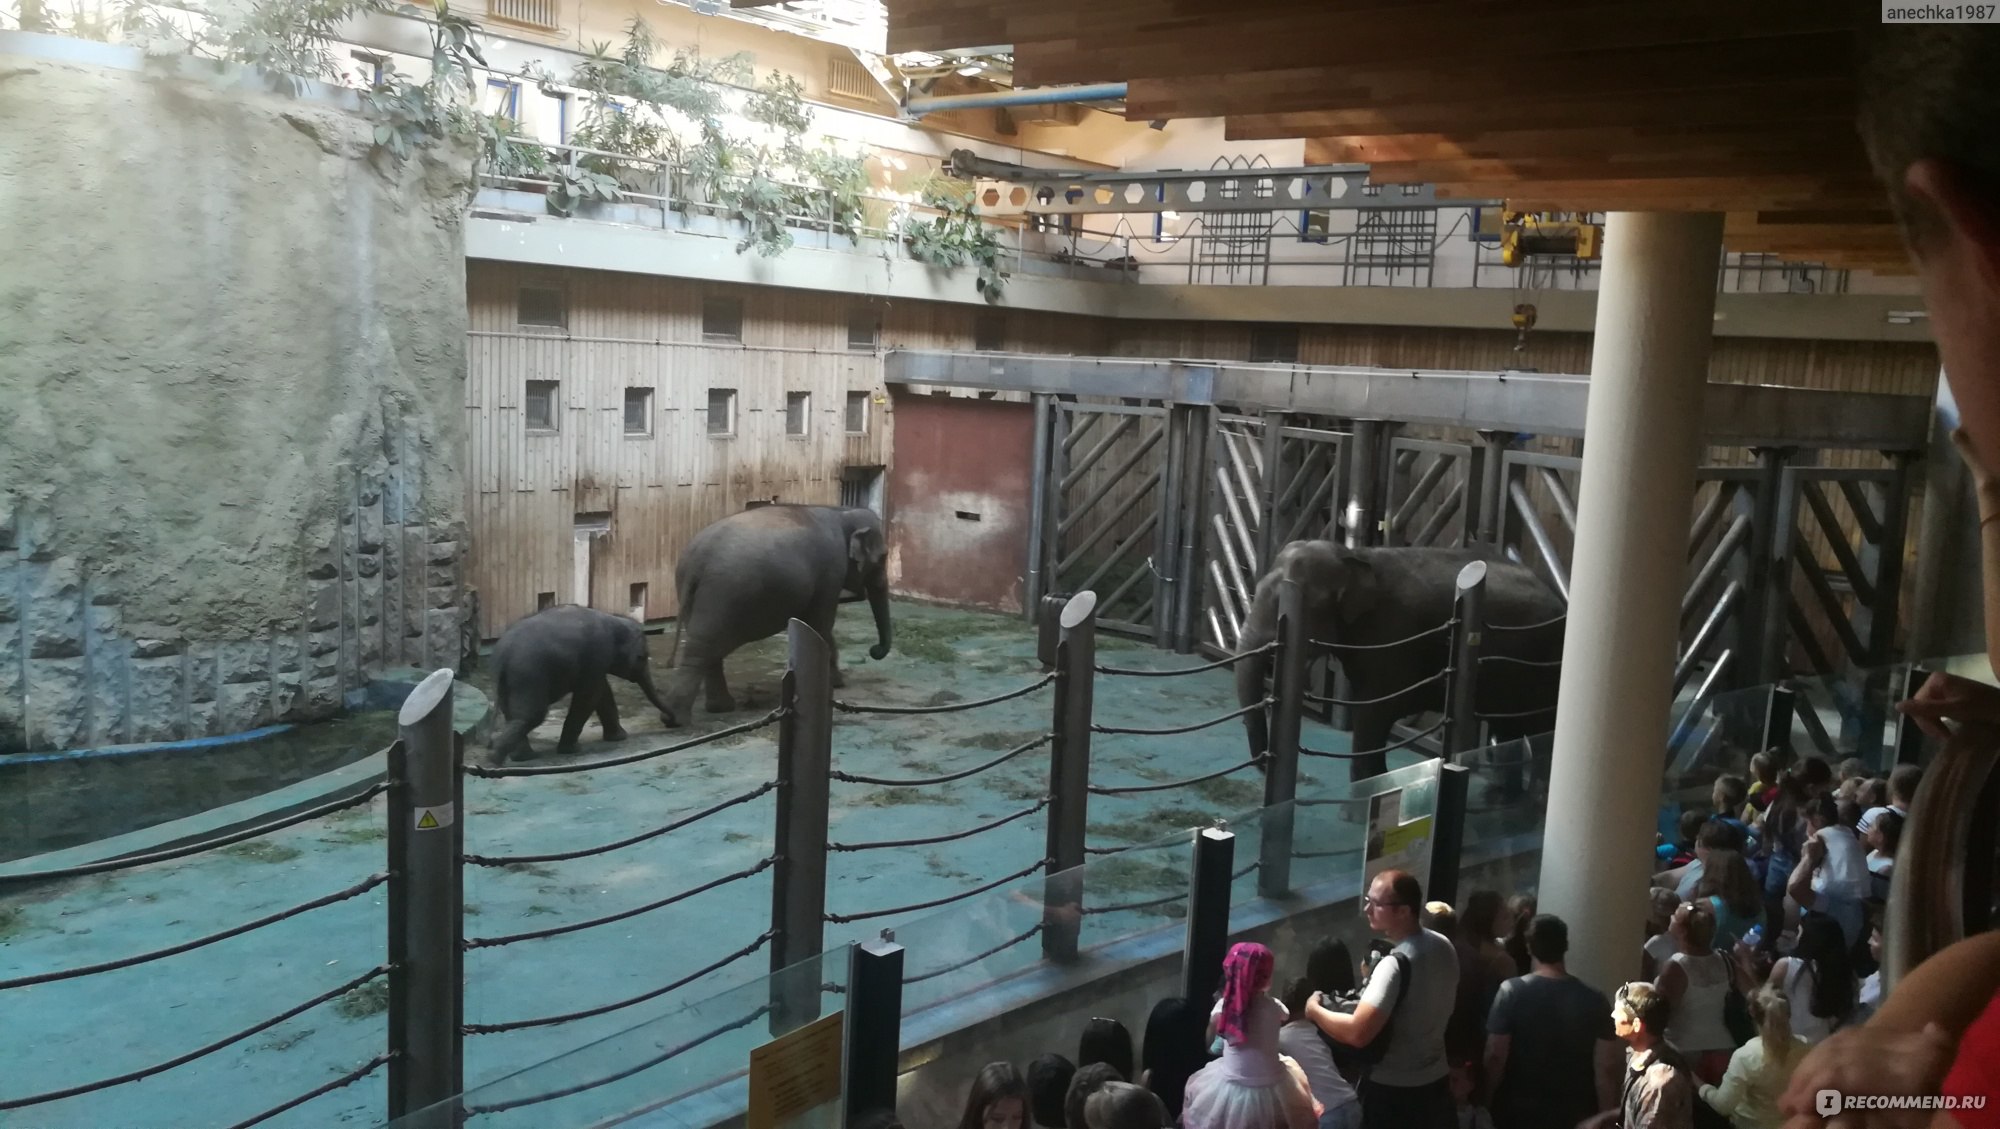 Зоопарки —
центры сохранения редких и исчезающих животных